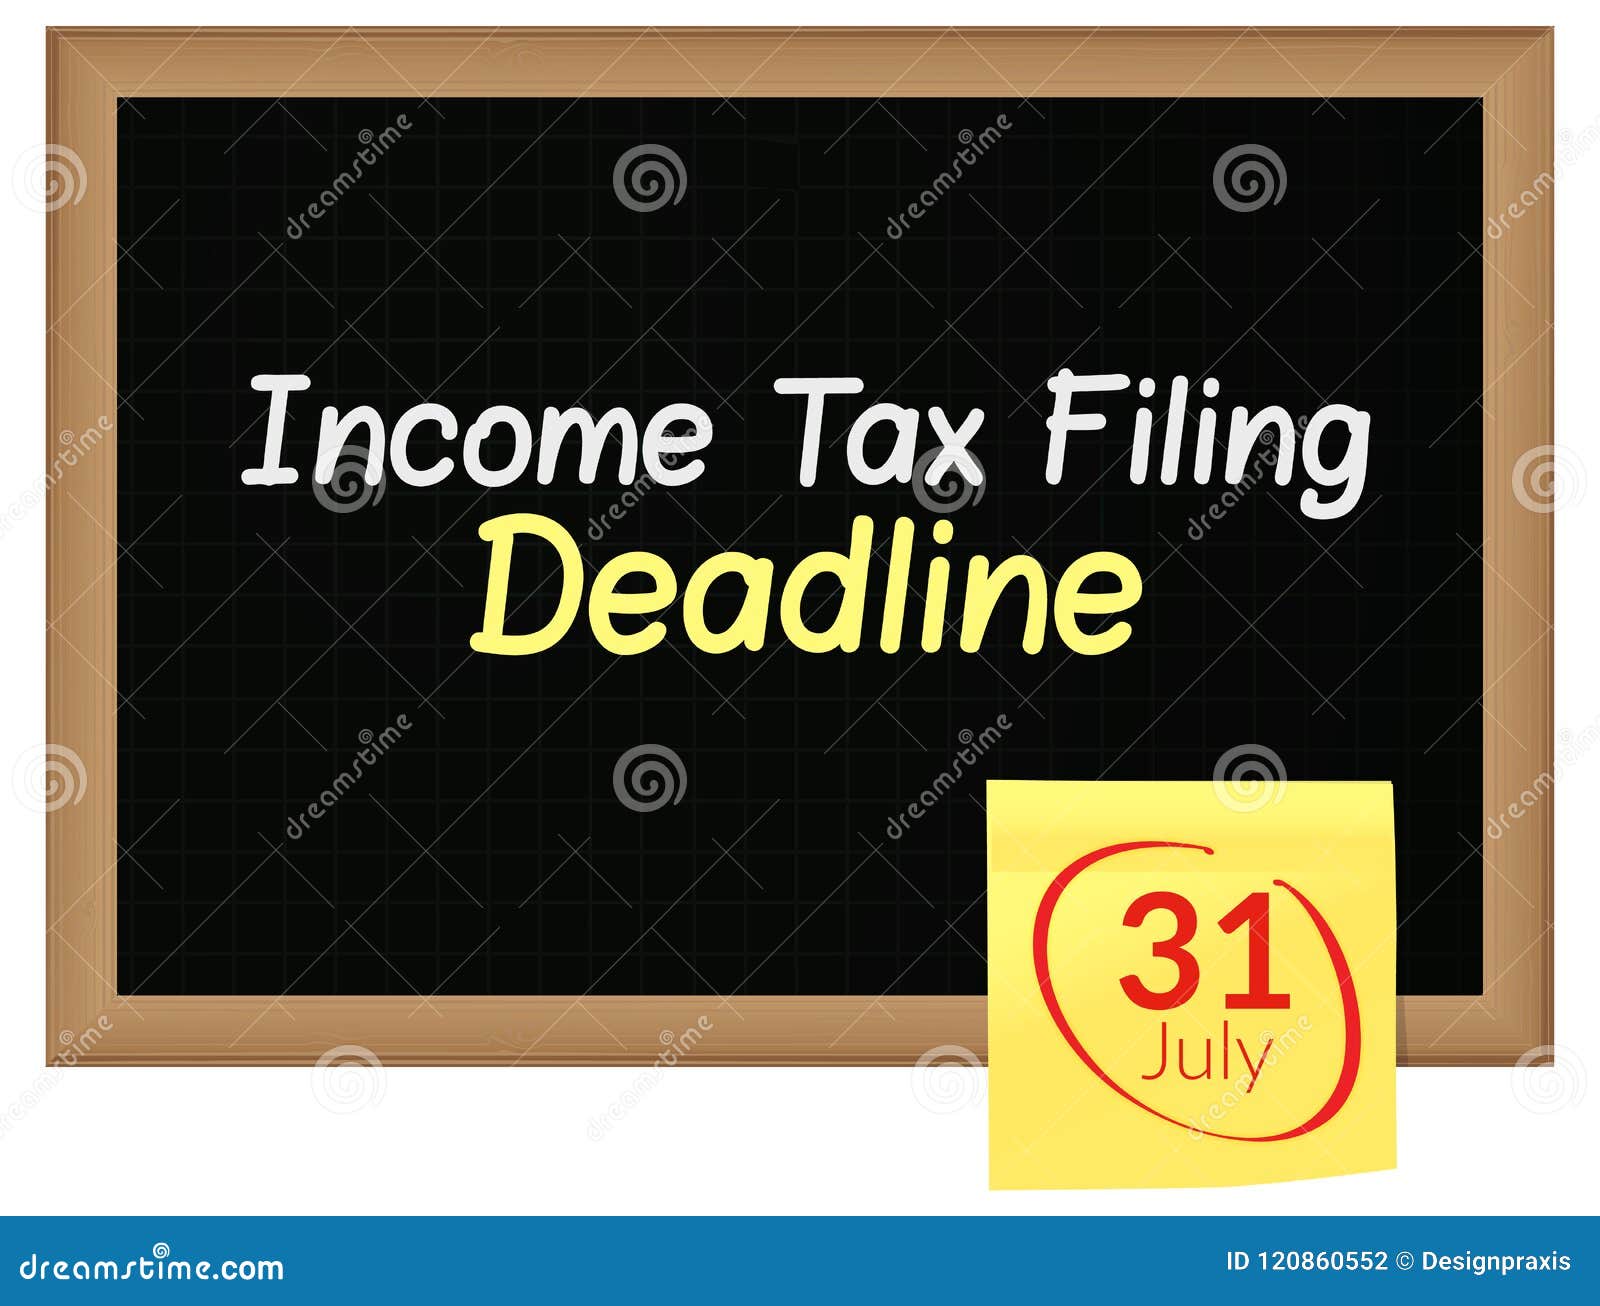 Tax Filing Deadline 31st July Written on Blackboard Stock